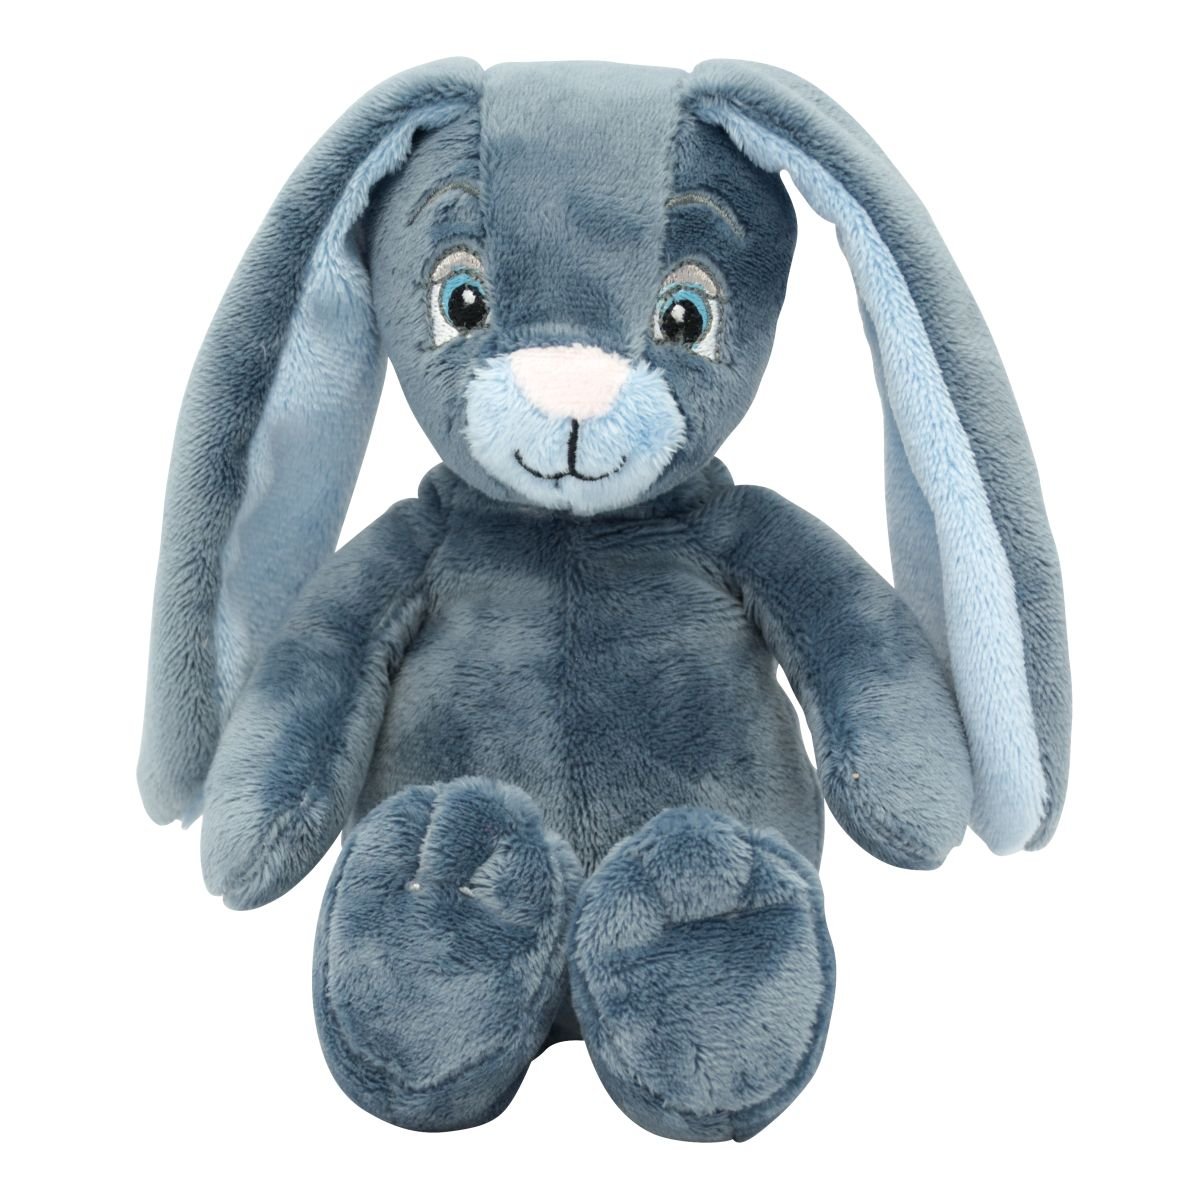 My newborn bunny-Kanin-Bl-28 cm-med/uden navn